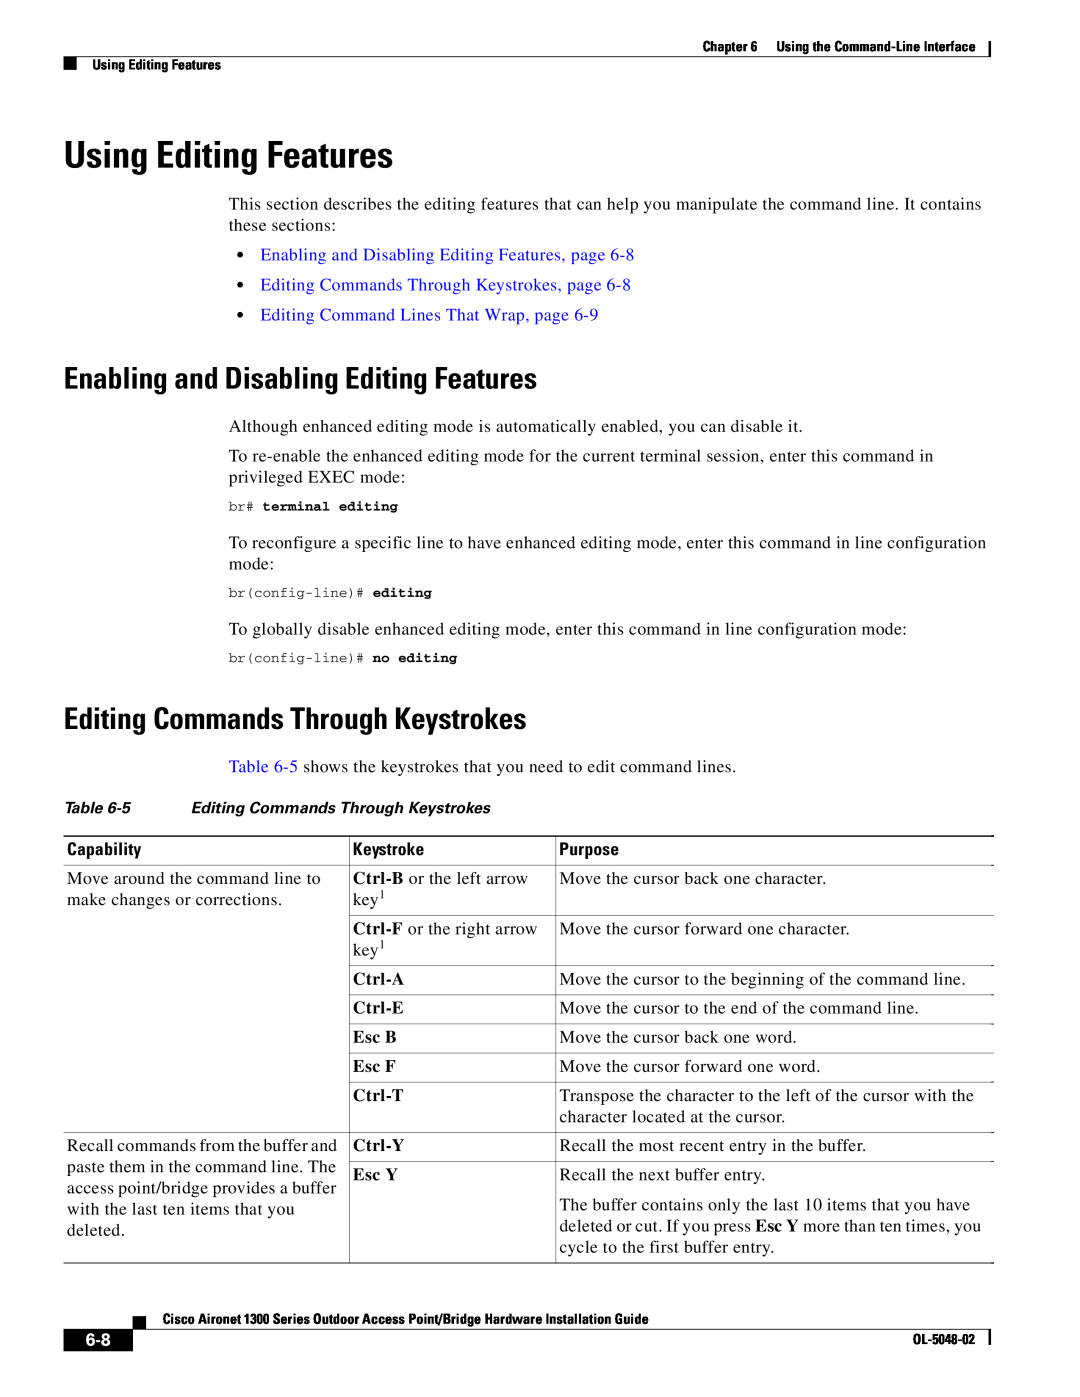 Cisco Systems 1300 Series Using Editing Features, Enabling and Disabling Editing Features, Ctrl-A, Ctrl-E, Esc B, Esc F 